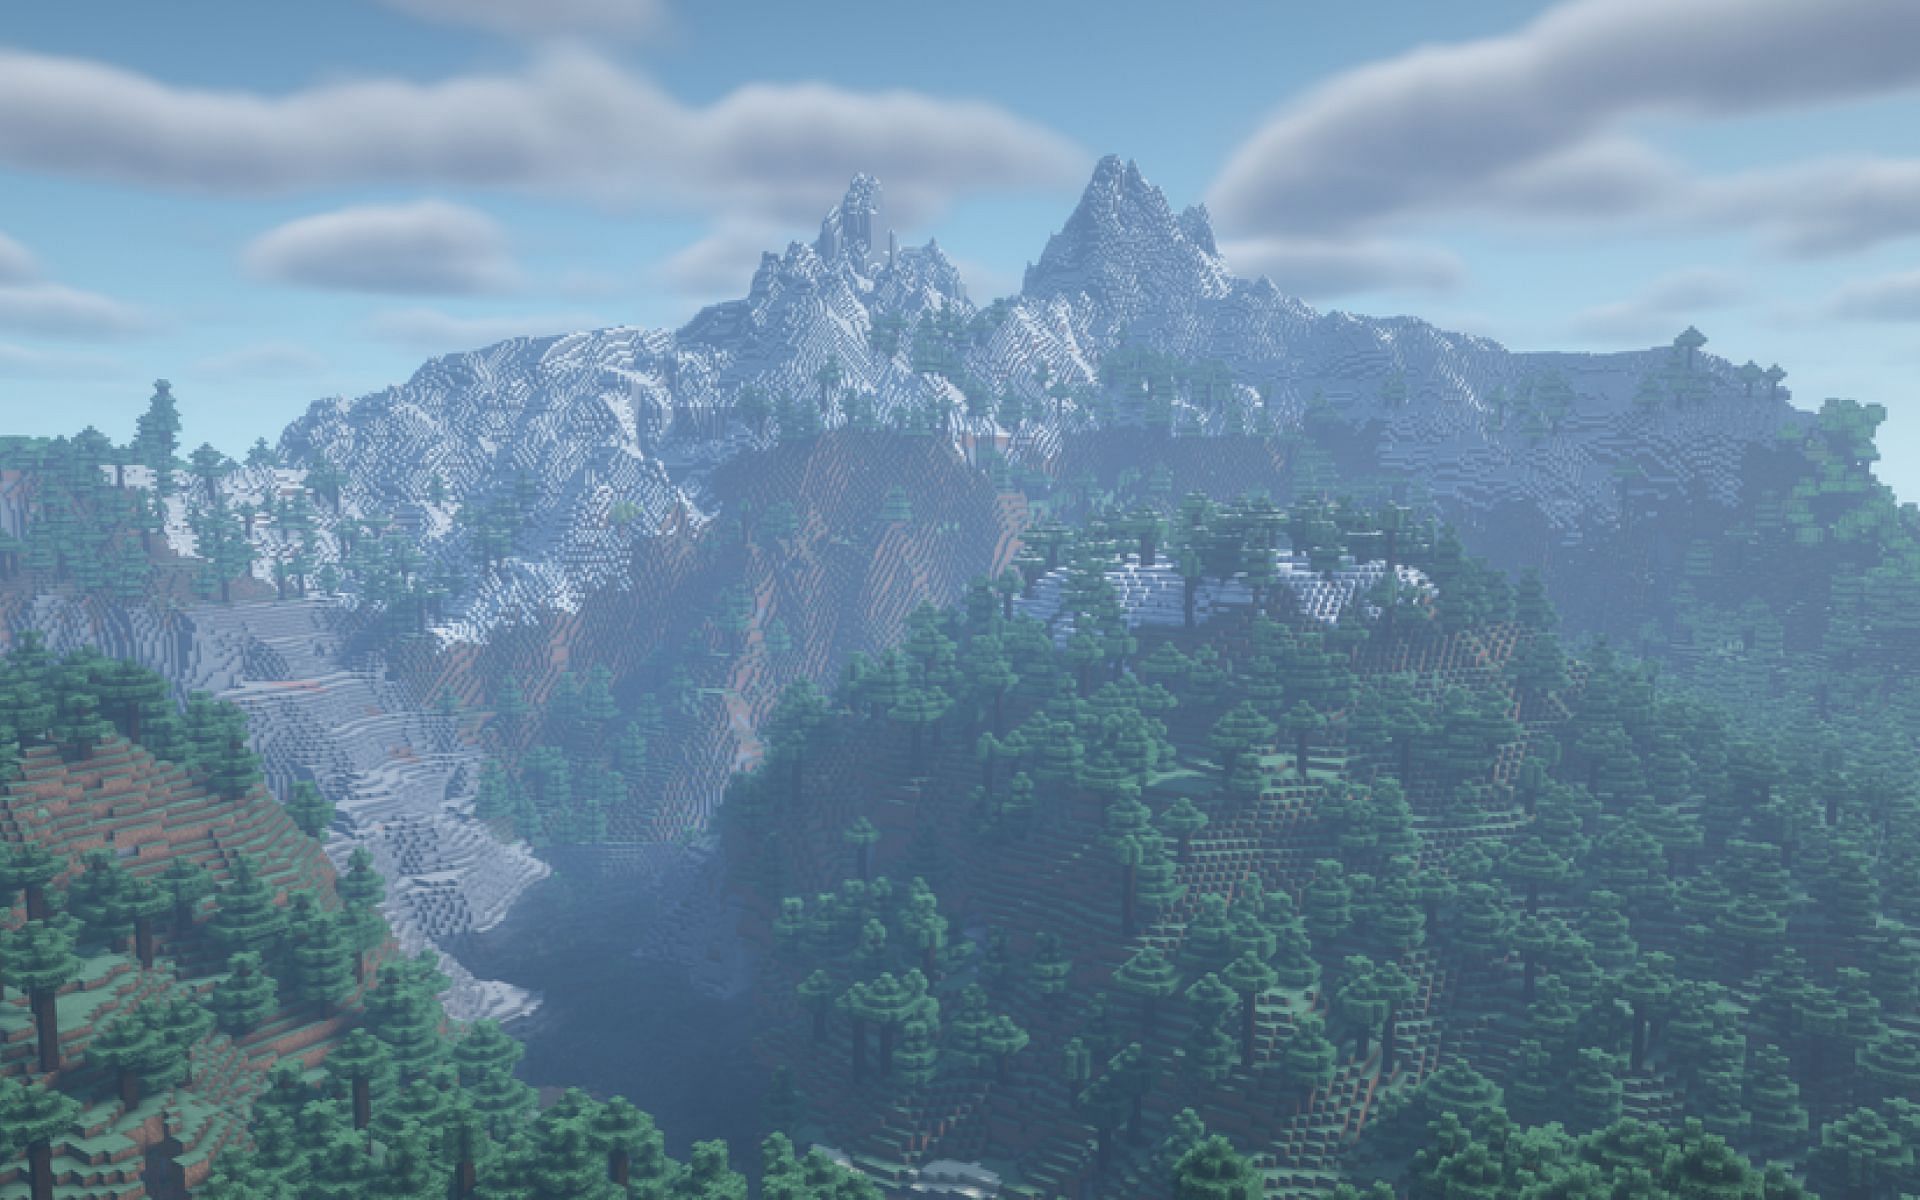 An image of a snowy peaks and mega taiga biome in Minecraft. (Image via u/bakeliteboi on Reddit)